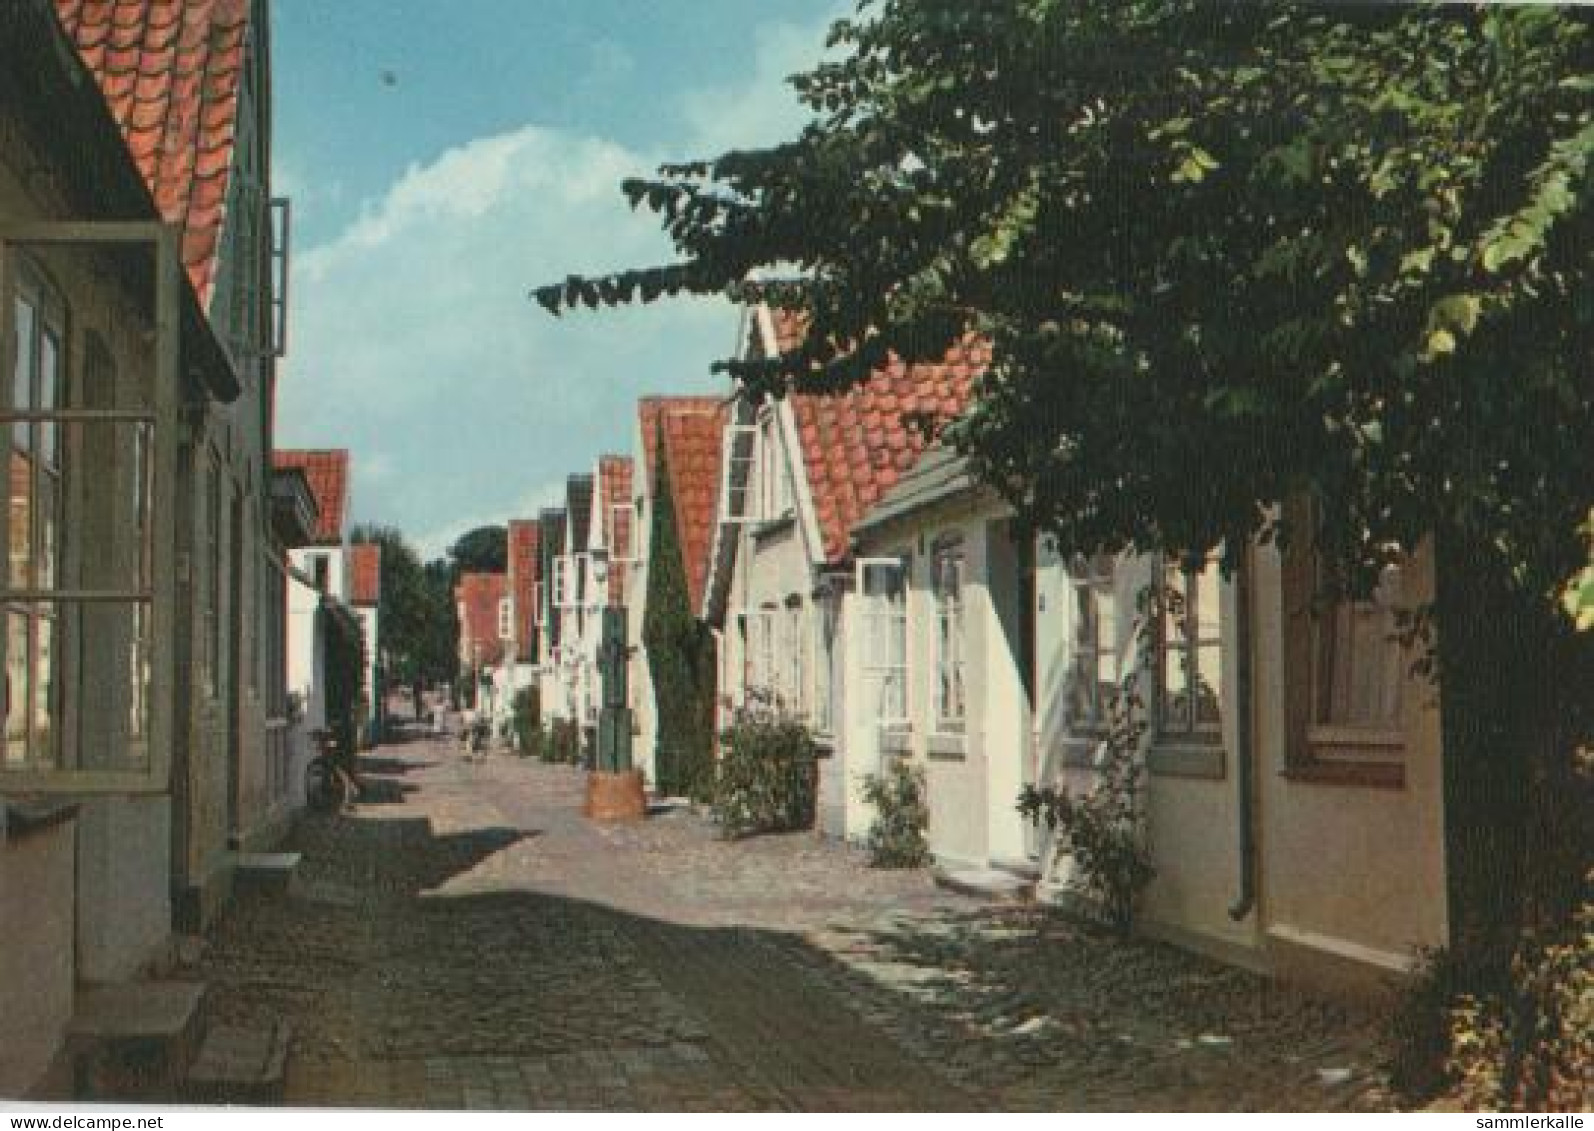 15120 - Wyk Auf Föhr - Carl-Häberlin-Strasse - Ca. 1975 - Föhr